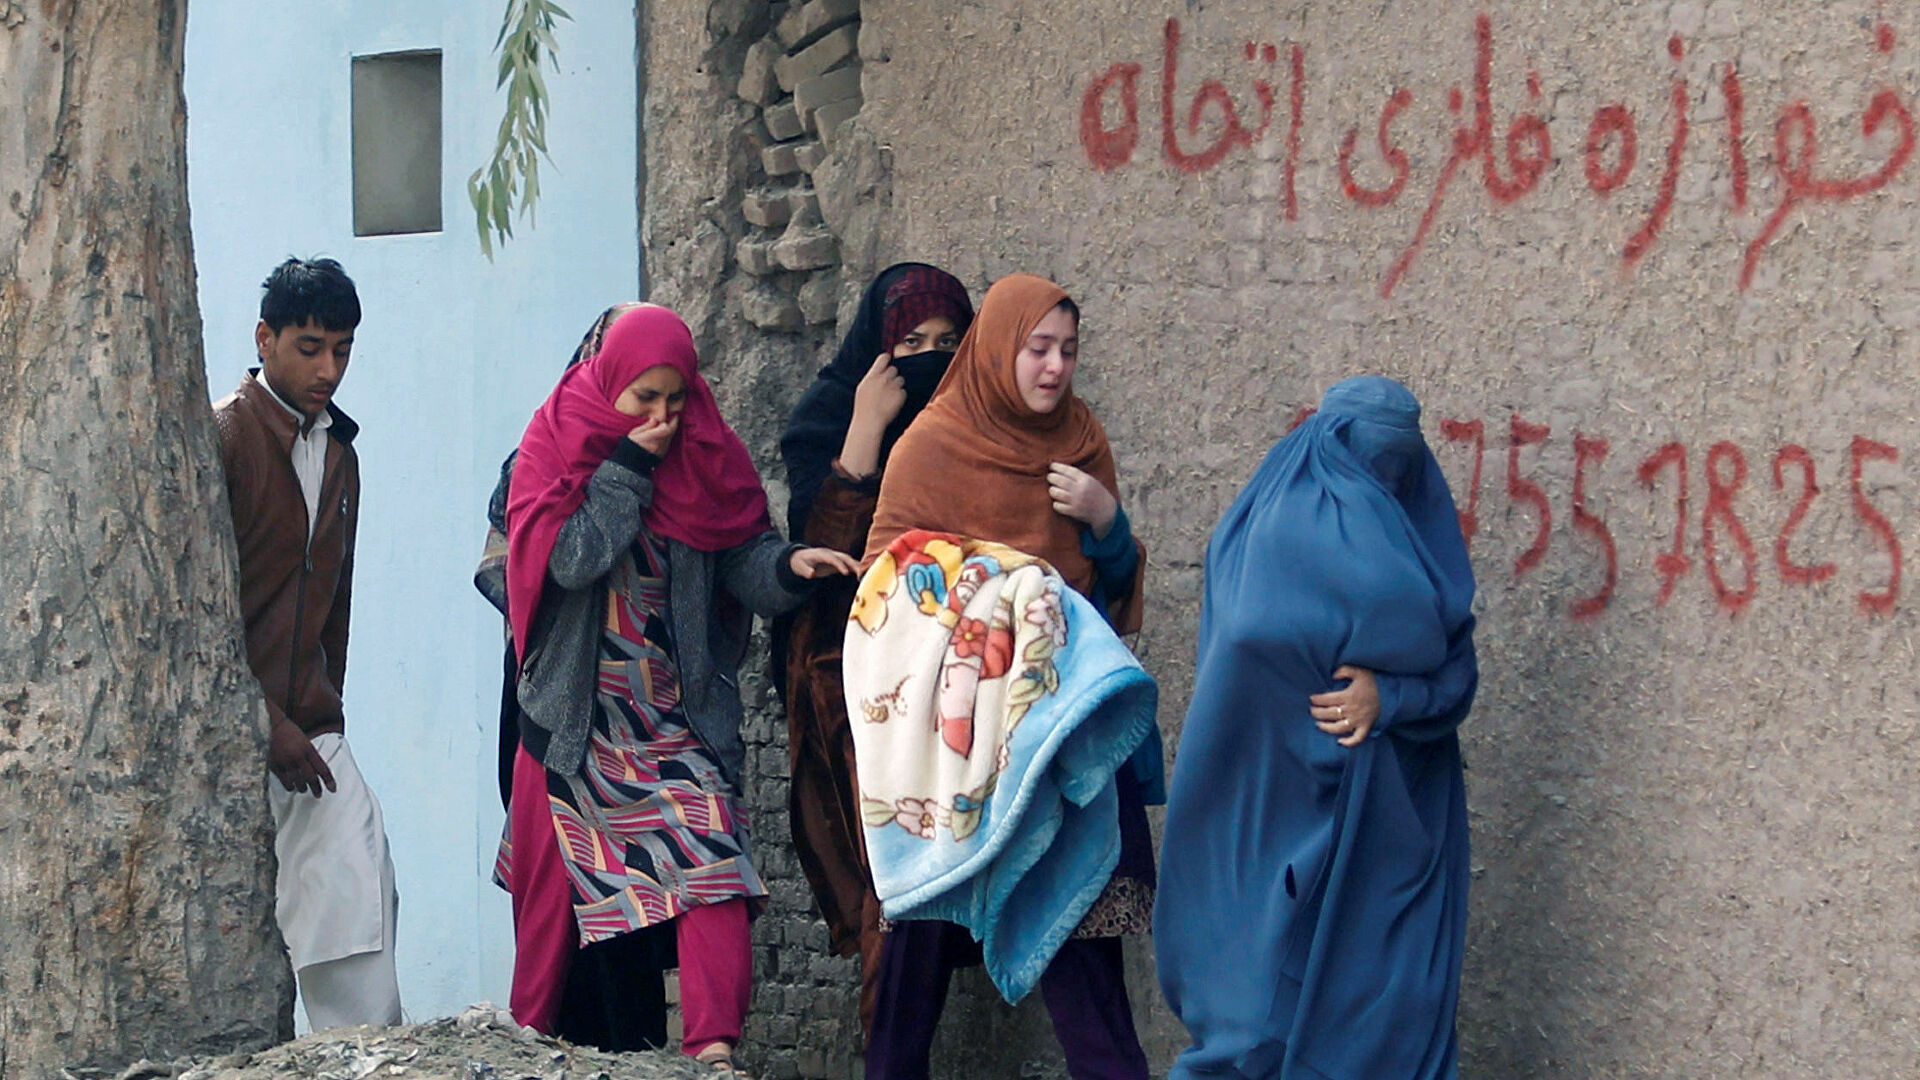 طالبان: زنان حق رفتن به حمام عمومی ندارند!